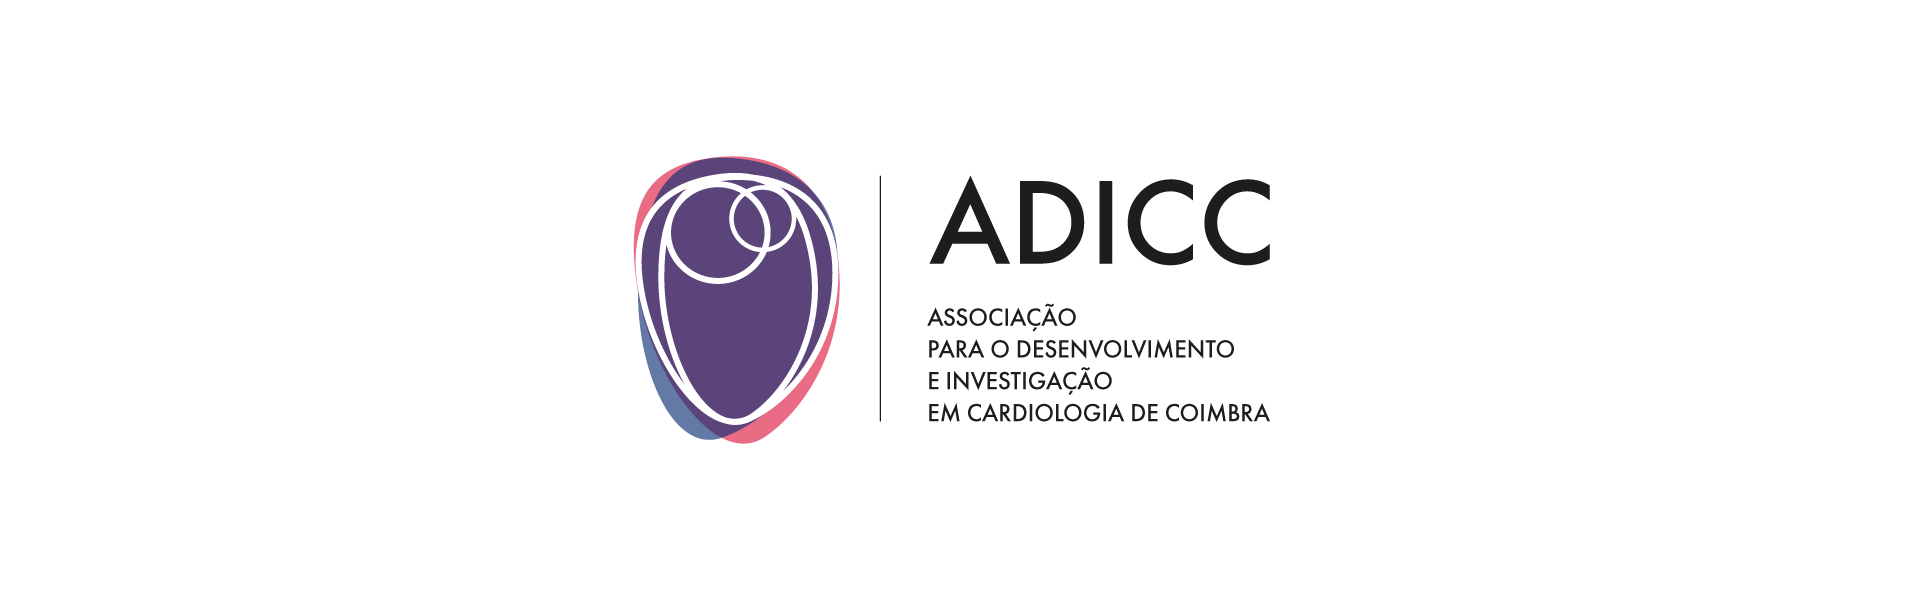 adicc - Associação para o Desenvolvimento e Investigação em Cardiologia de Coimbra